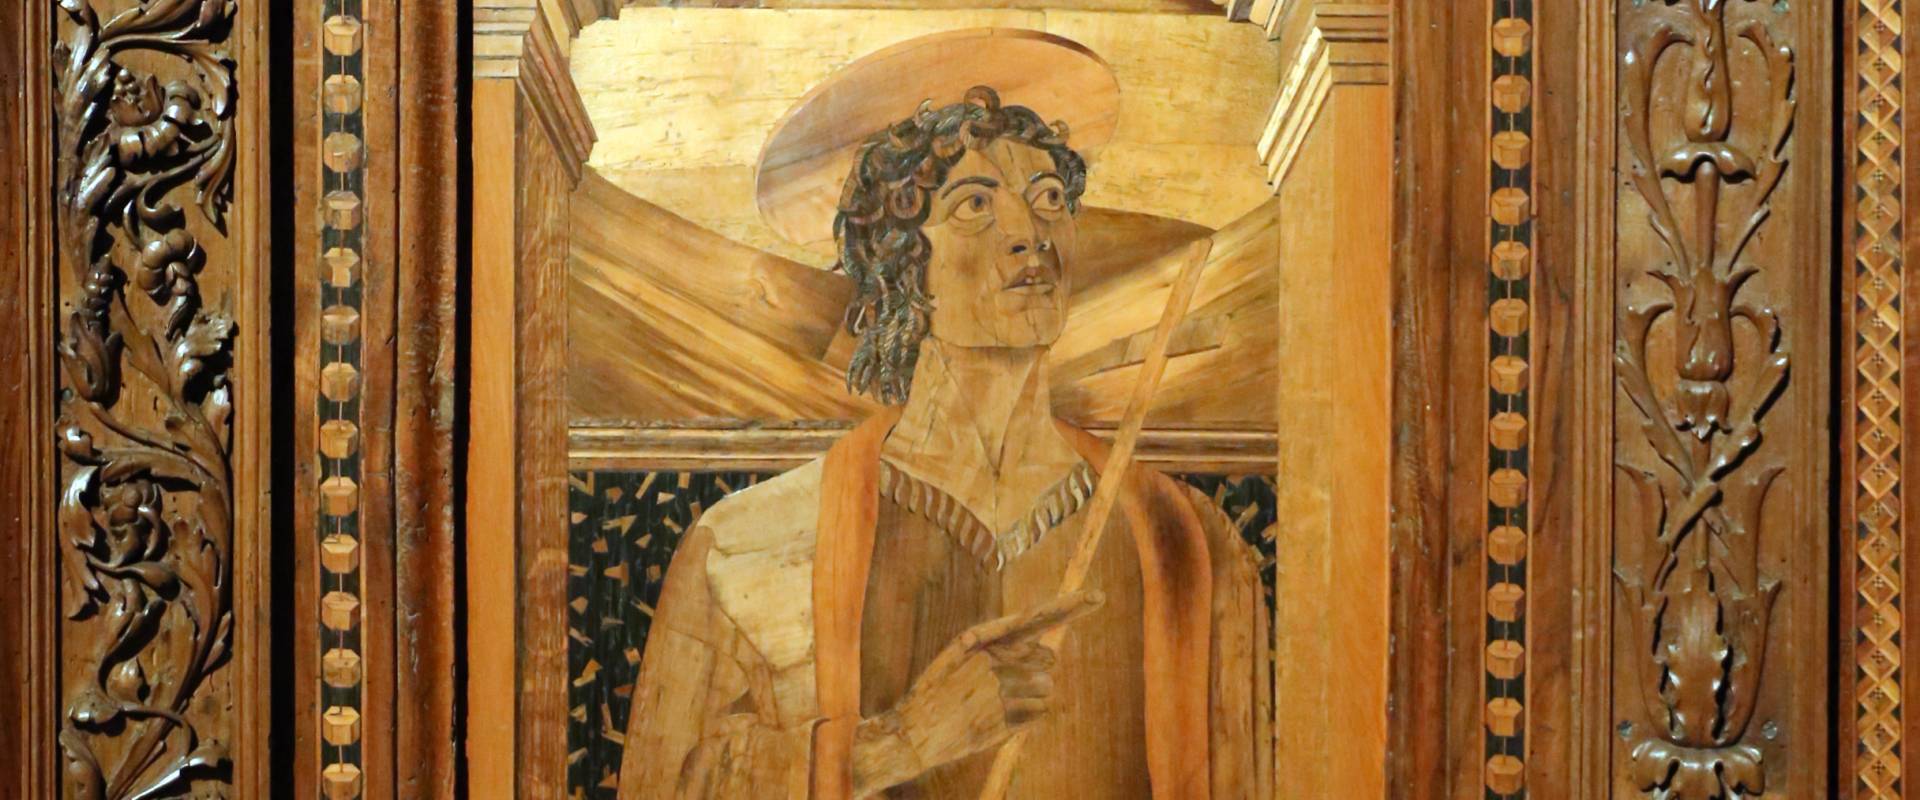 Bernardino da lendinara, due tronetti lignei con vedute di città e i ss. ilario e giovanni battista, 1494, 07 photo by Sailko